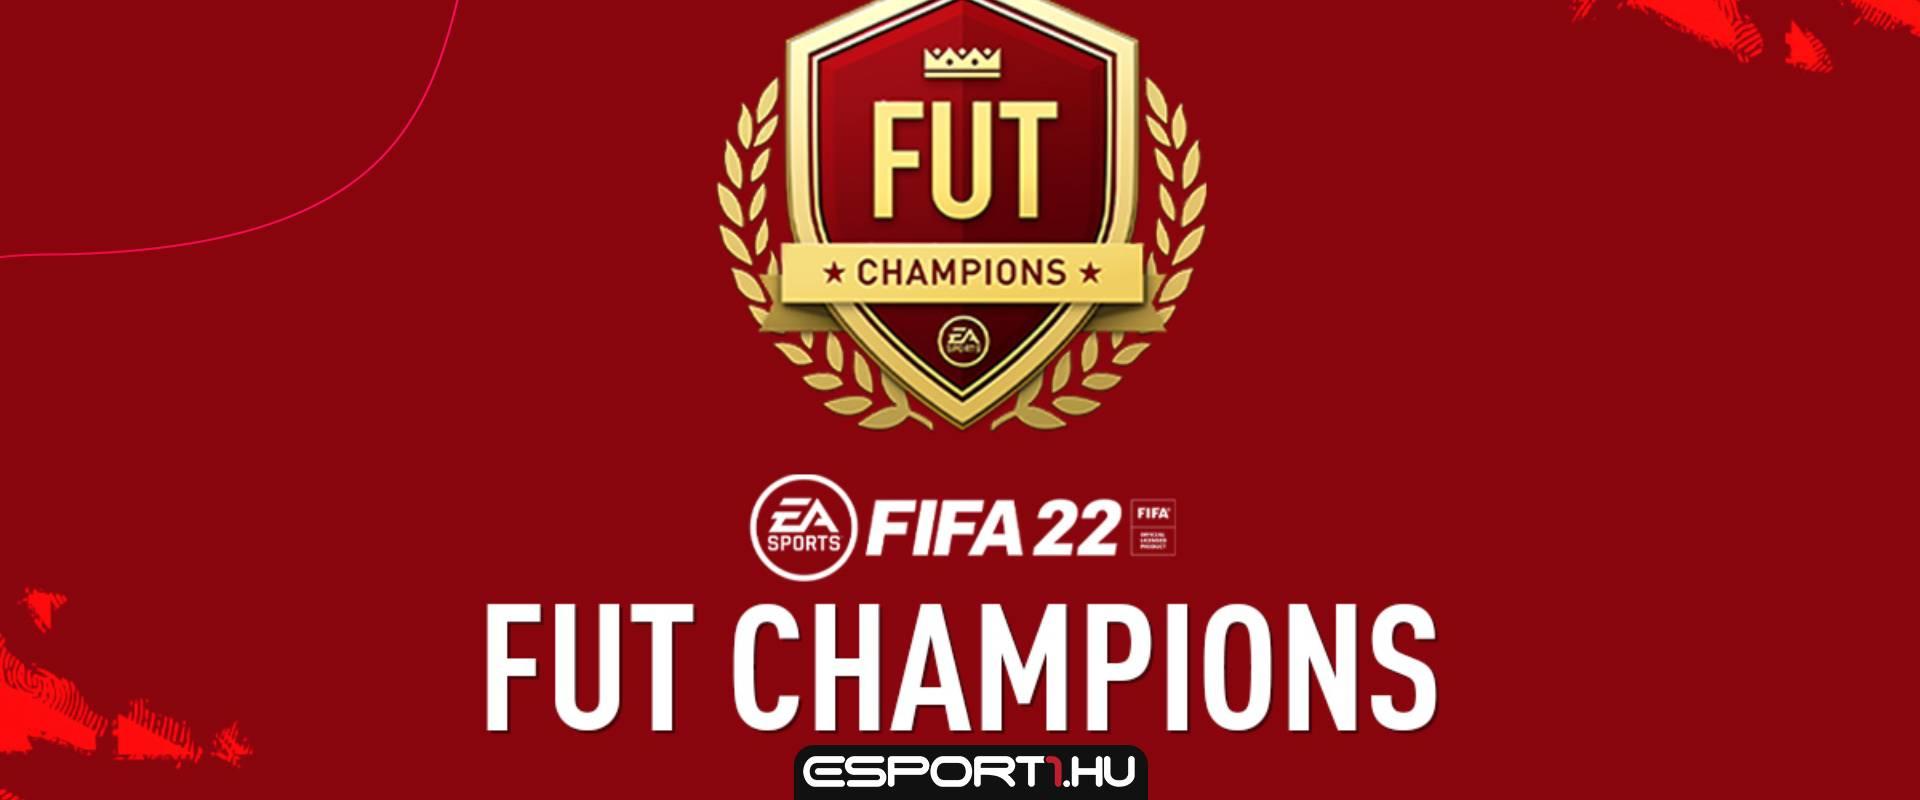 Így fest a FIFA 22-ben a Weekend League új formátuma